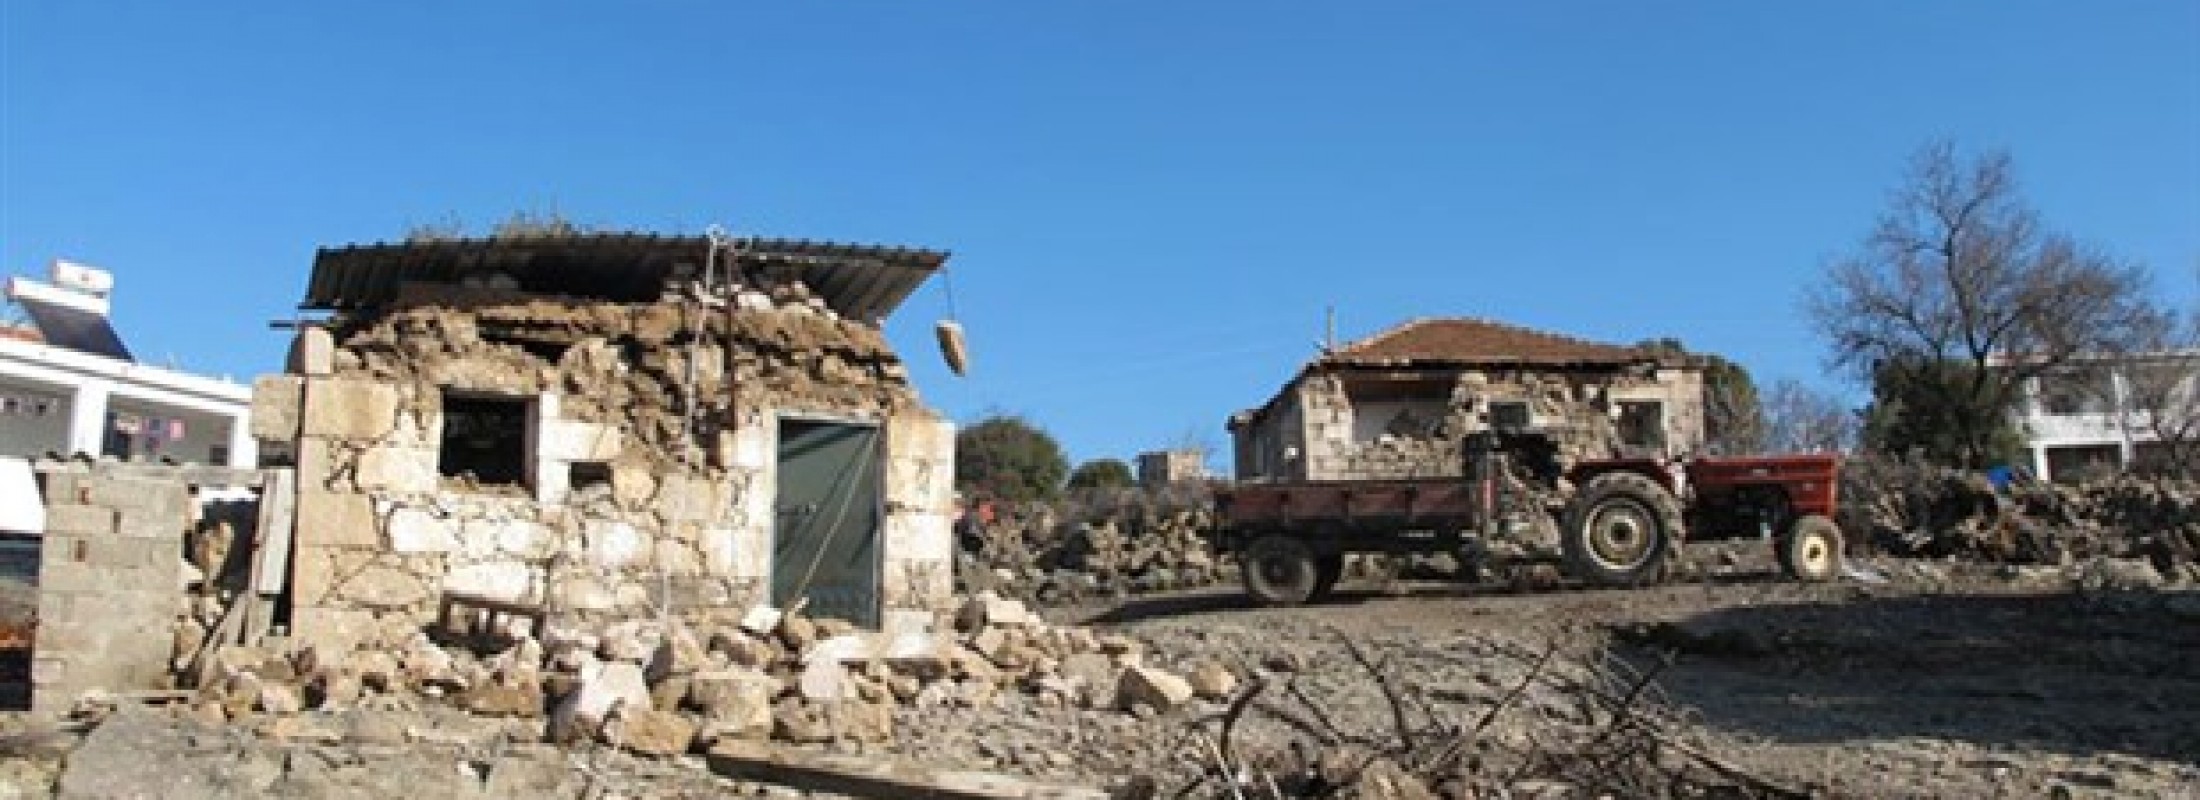 Depremde zarar gören köyleri ziyaret ettik, köylülerle konuştuk